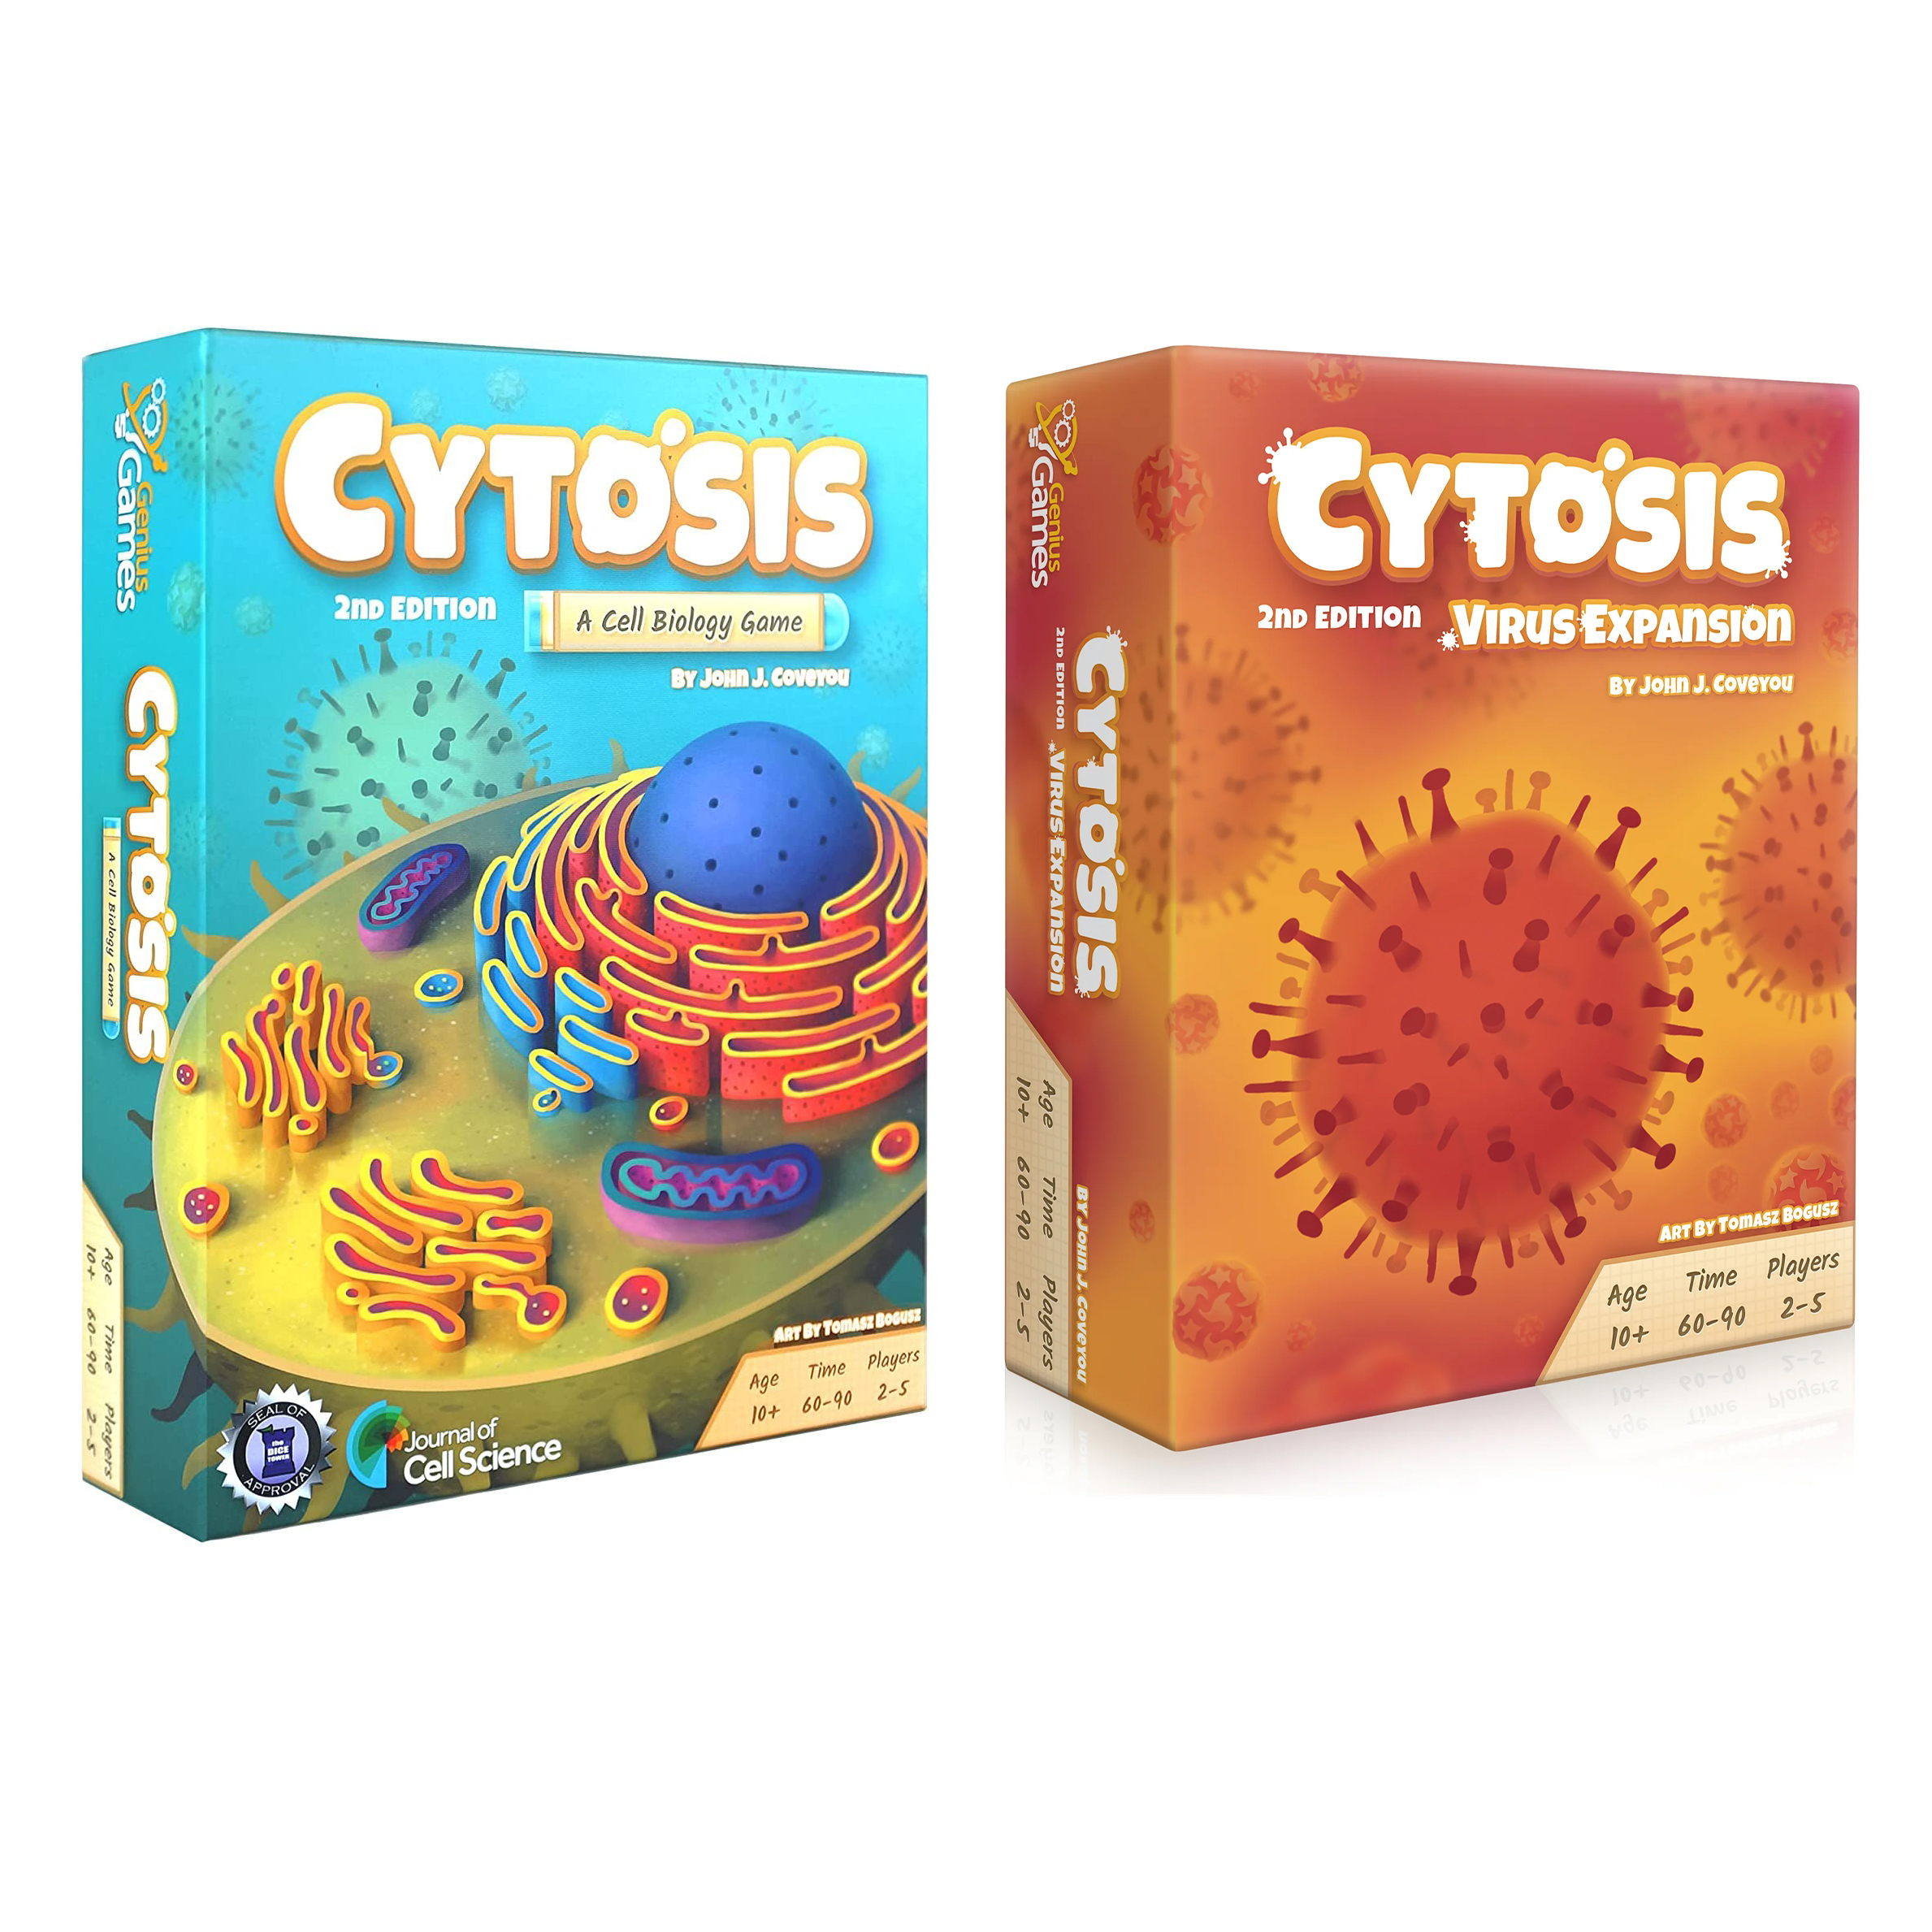 Набор Genius Games настольная игра Cytosis + дополнение Virus Expansion на английском дополнение для игры steamforged games ltd resident evil 2 b files на английском